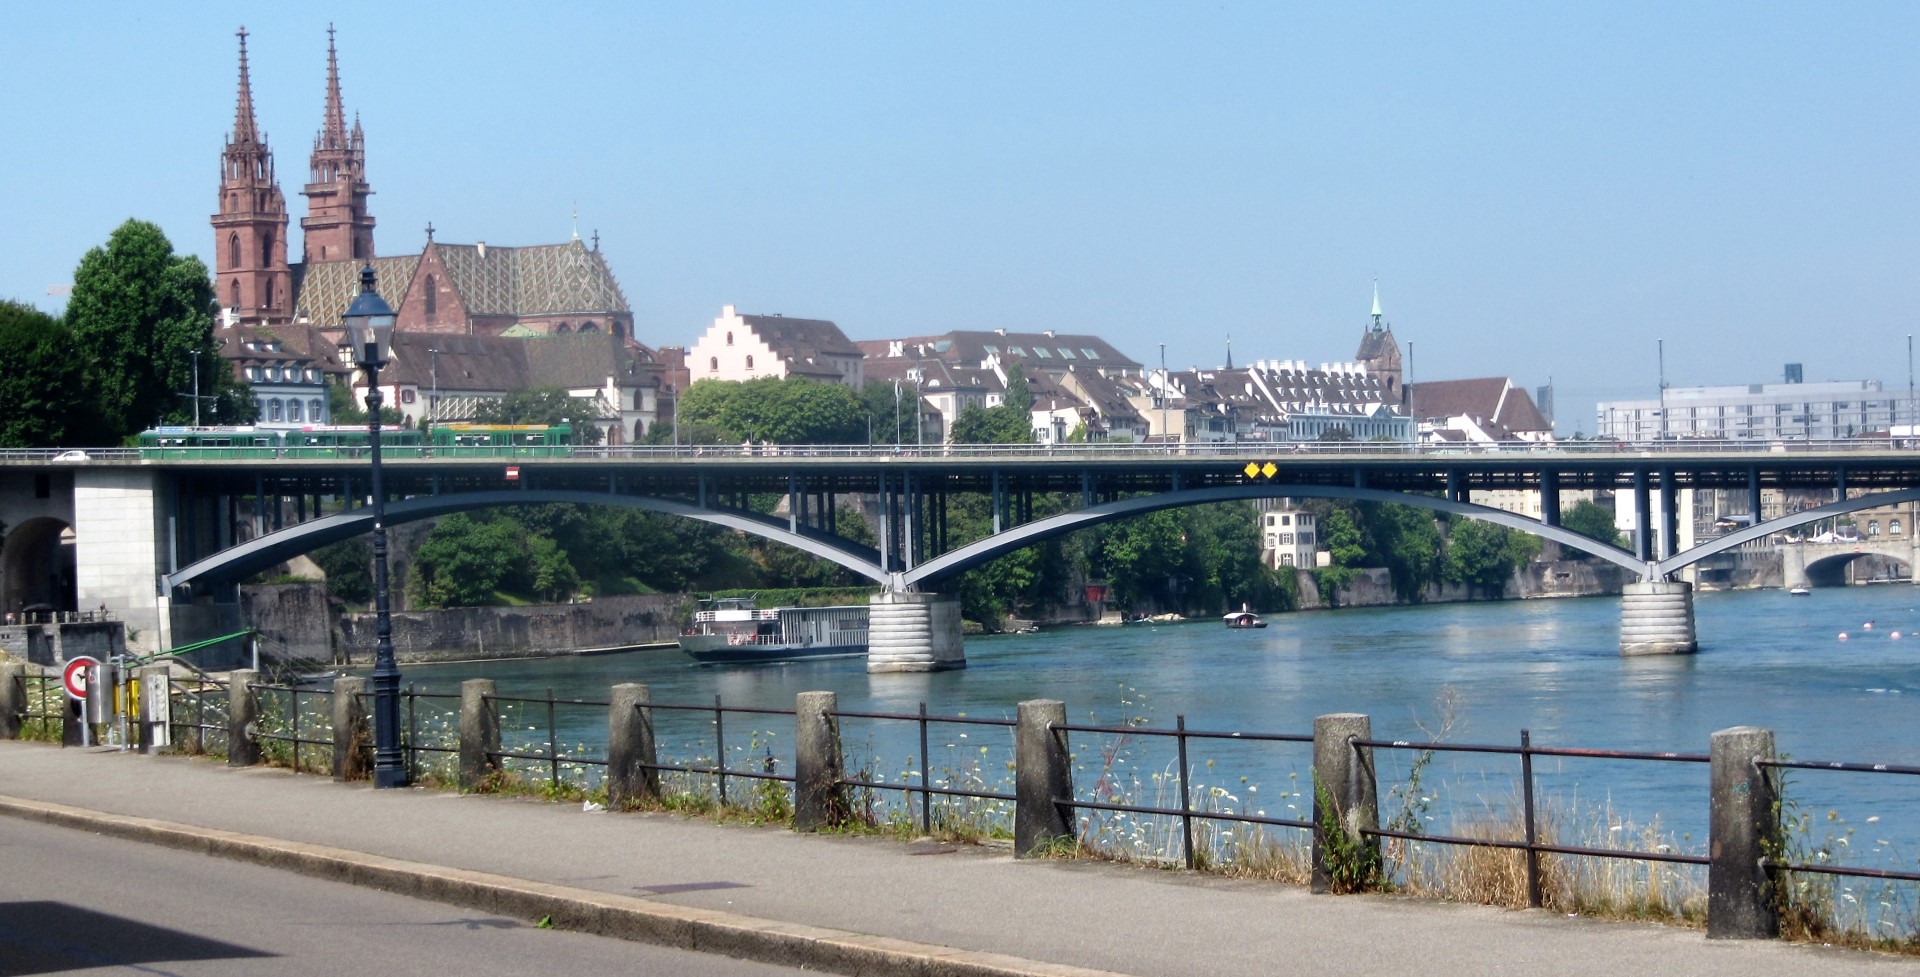 Basel 